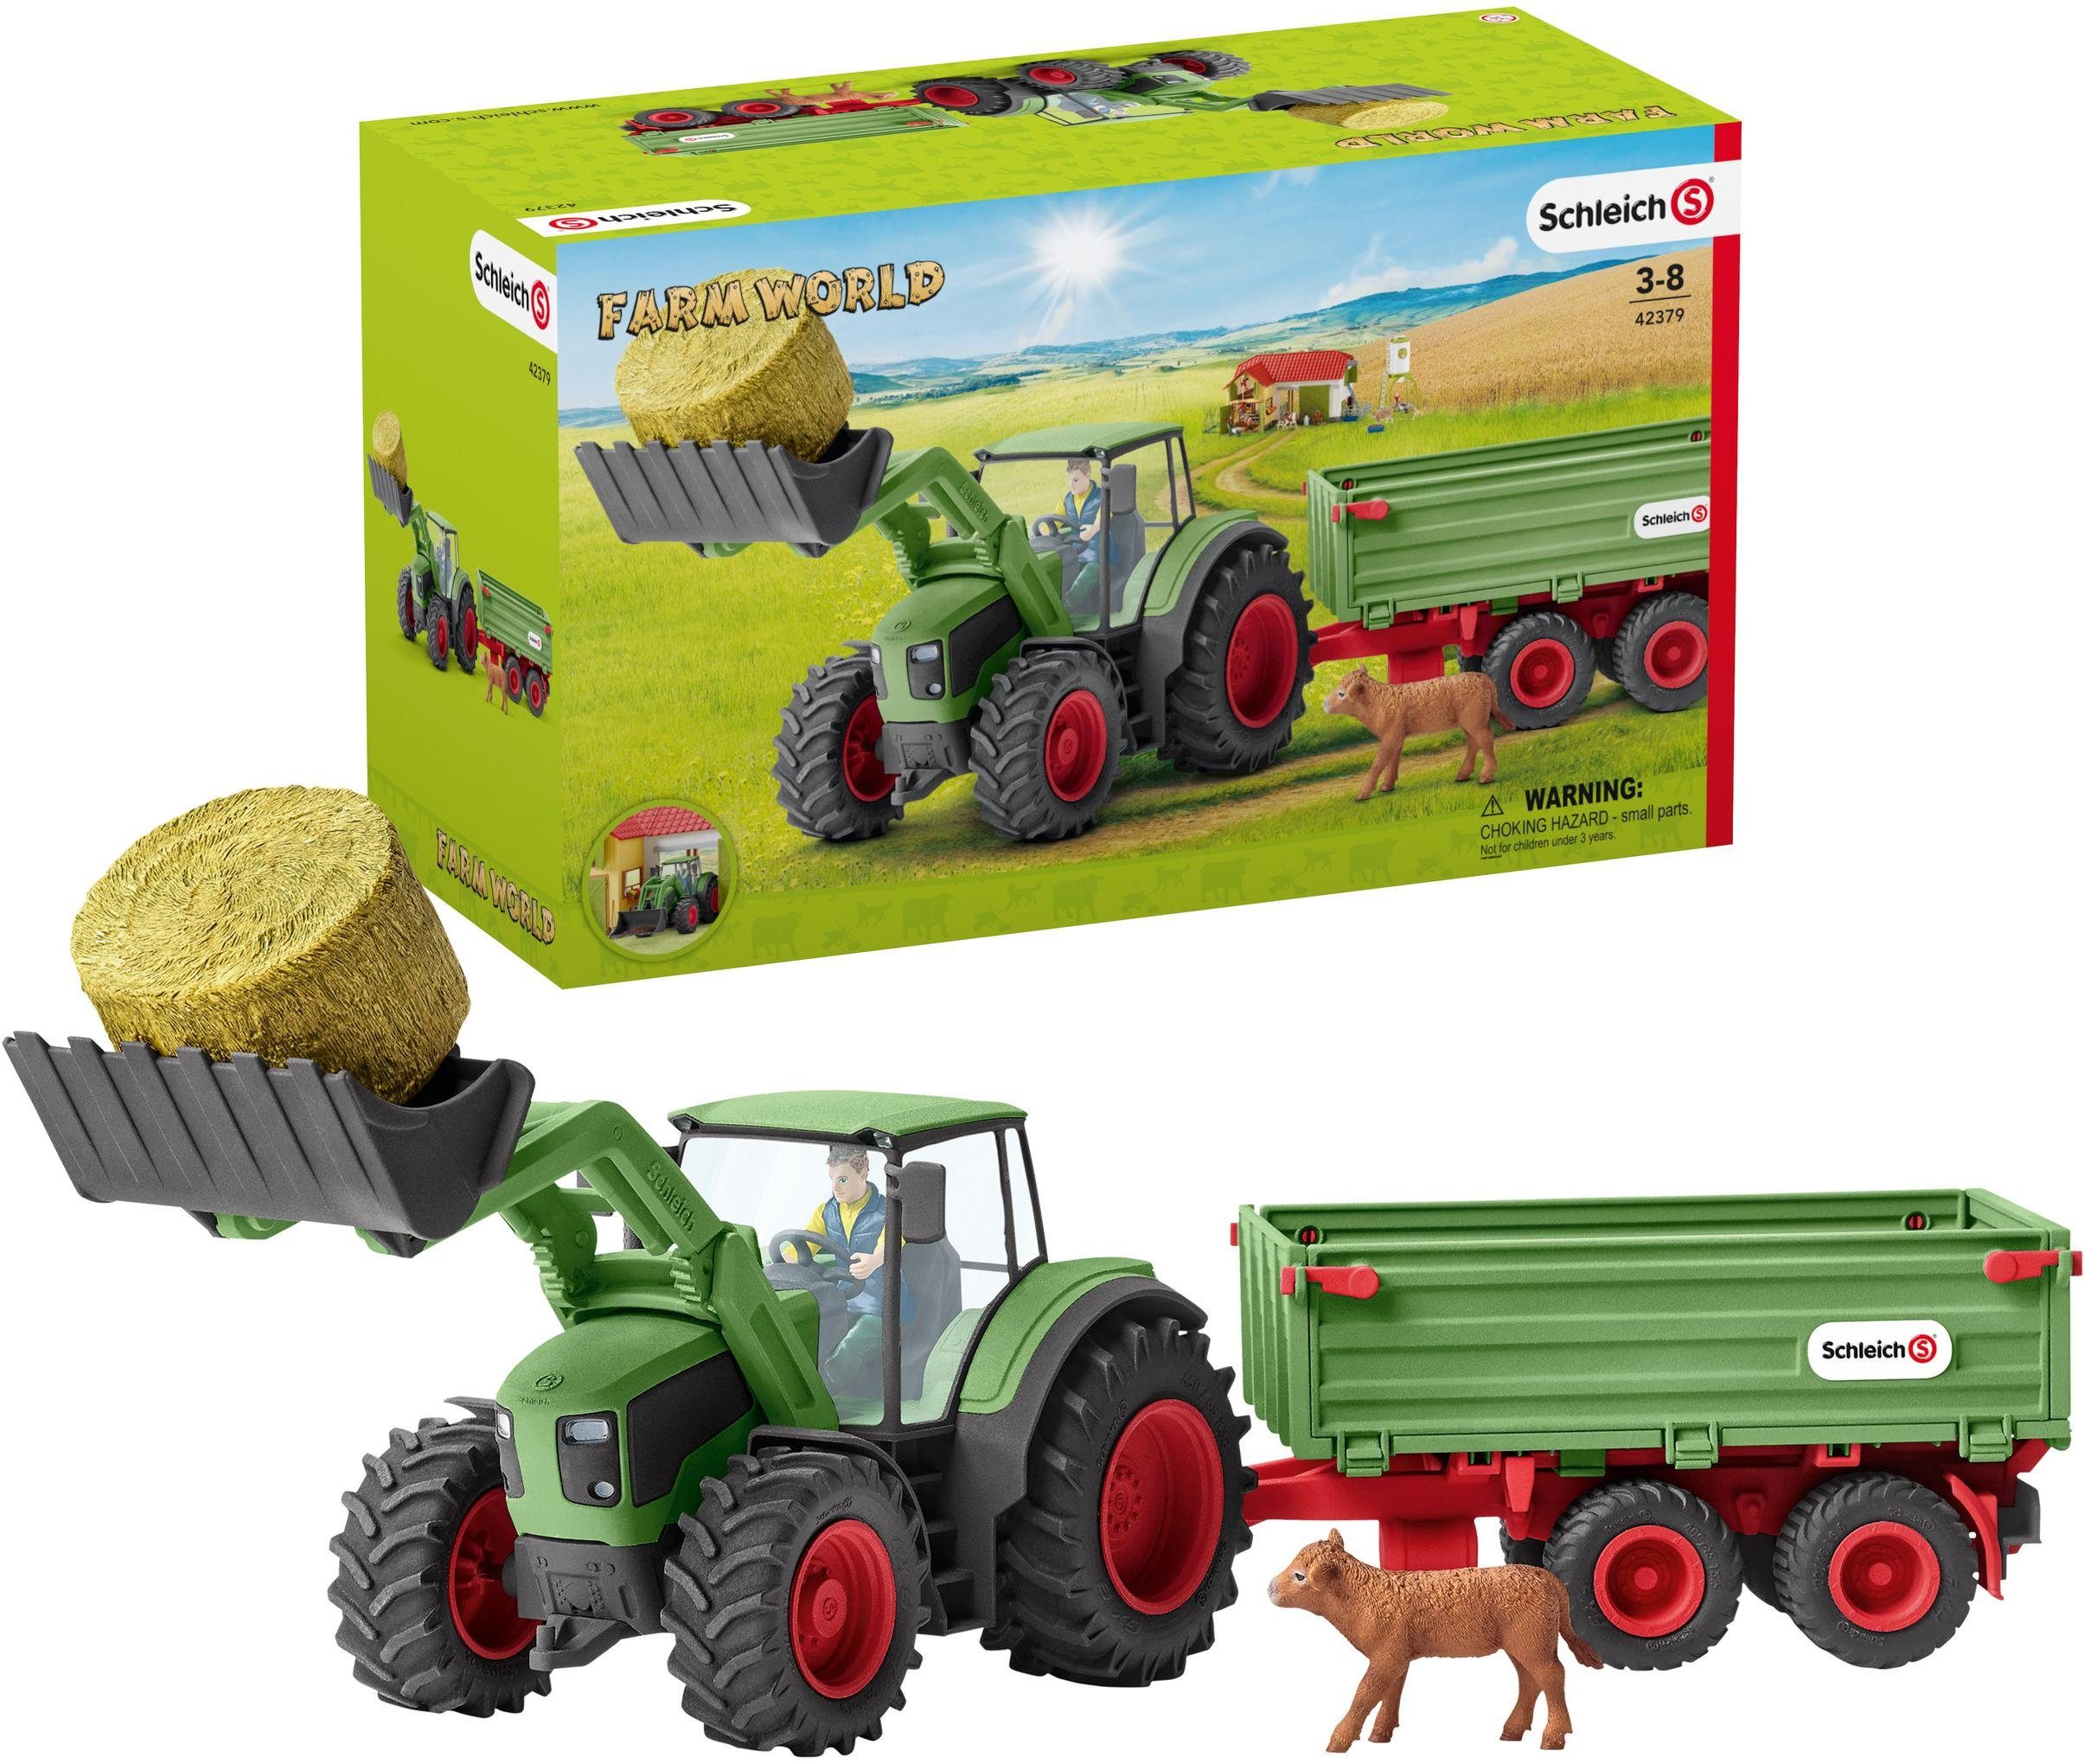 Schleich® Spielzeug-Traktor »Farm World, Traktor mit Anhänger (42379)«,  (Set), Made in Germany online kaufen | OTTO